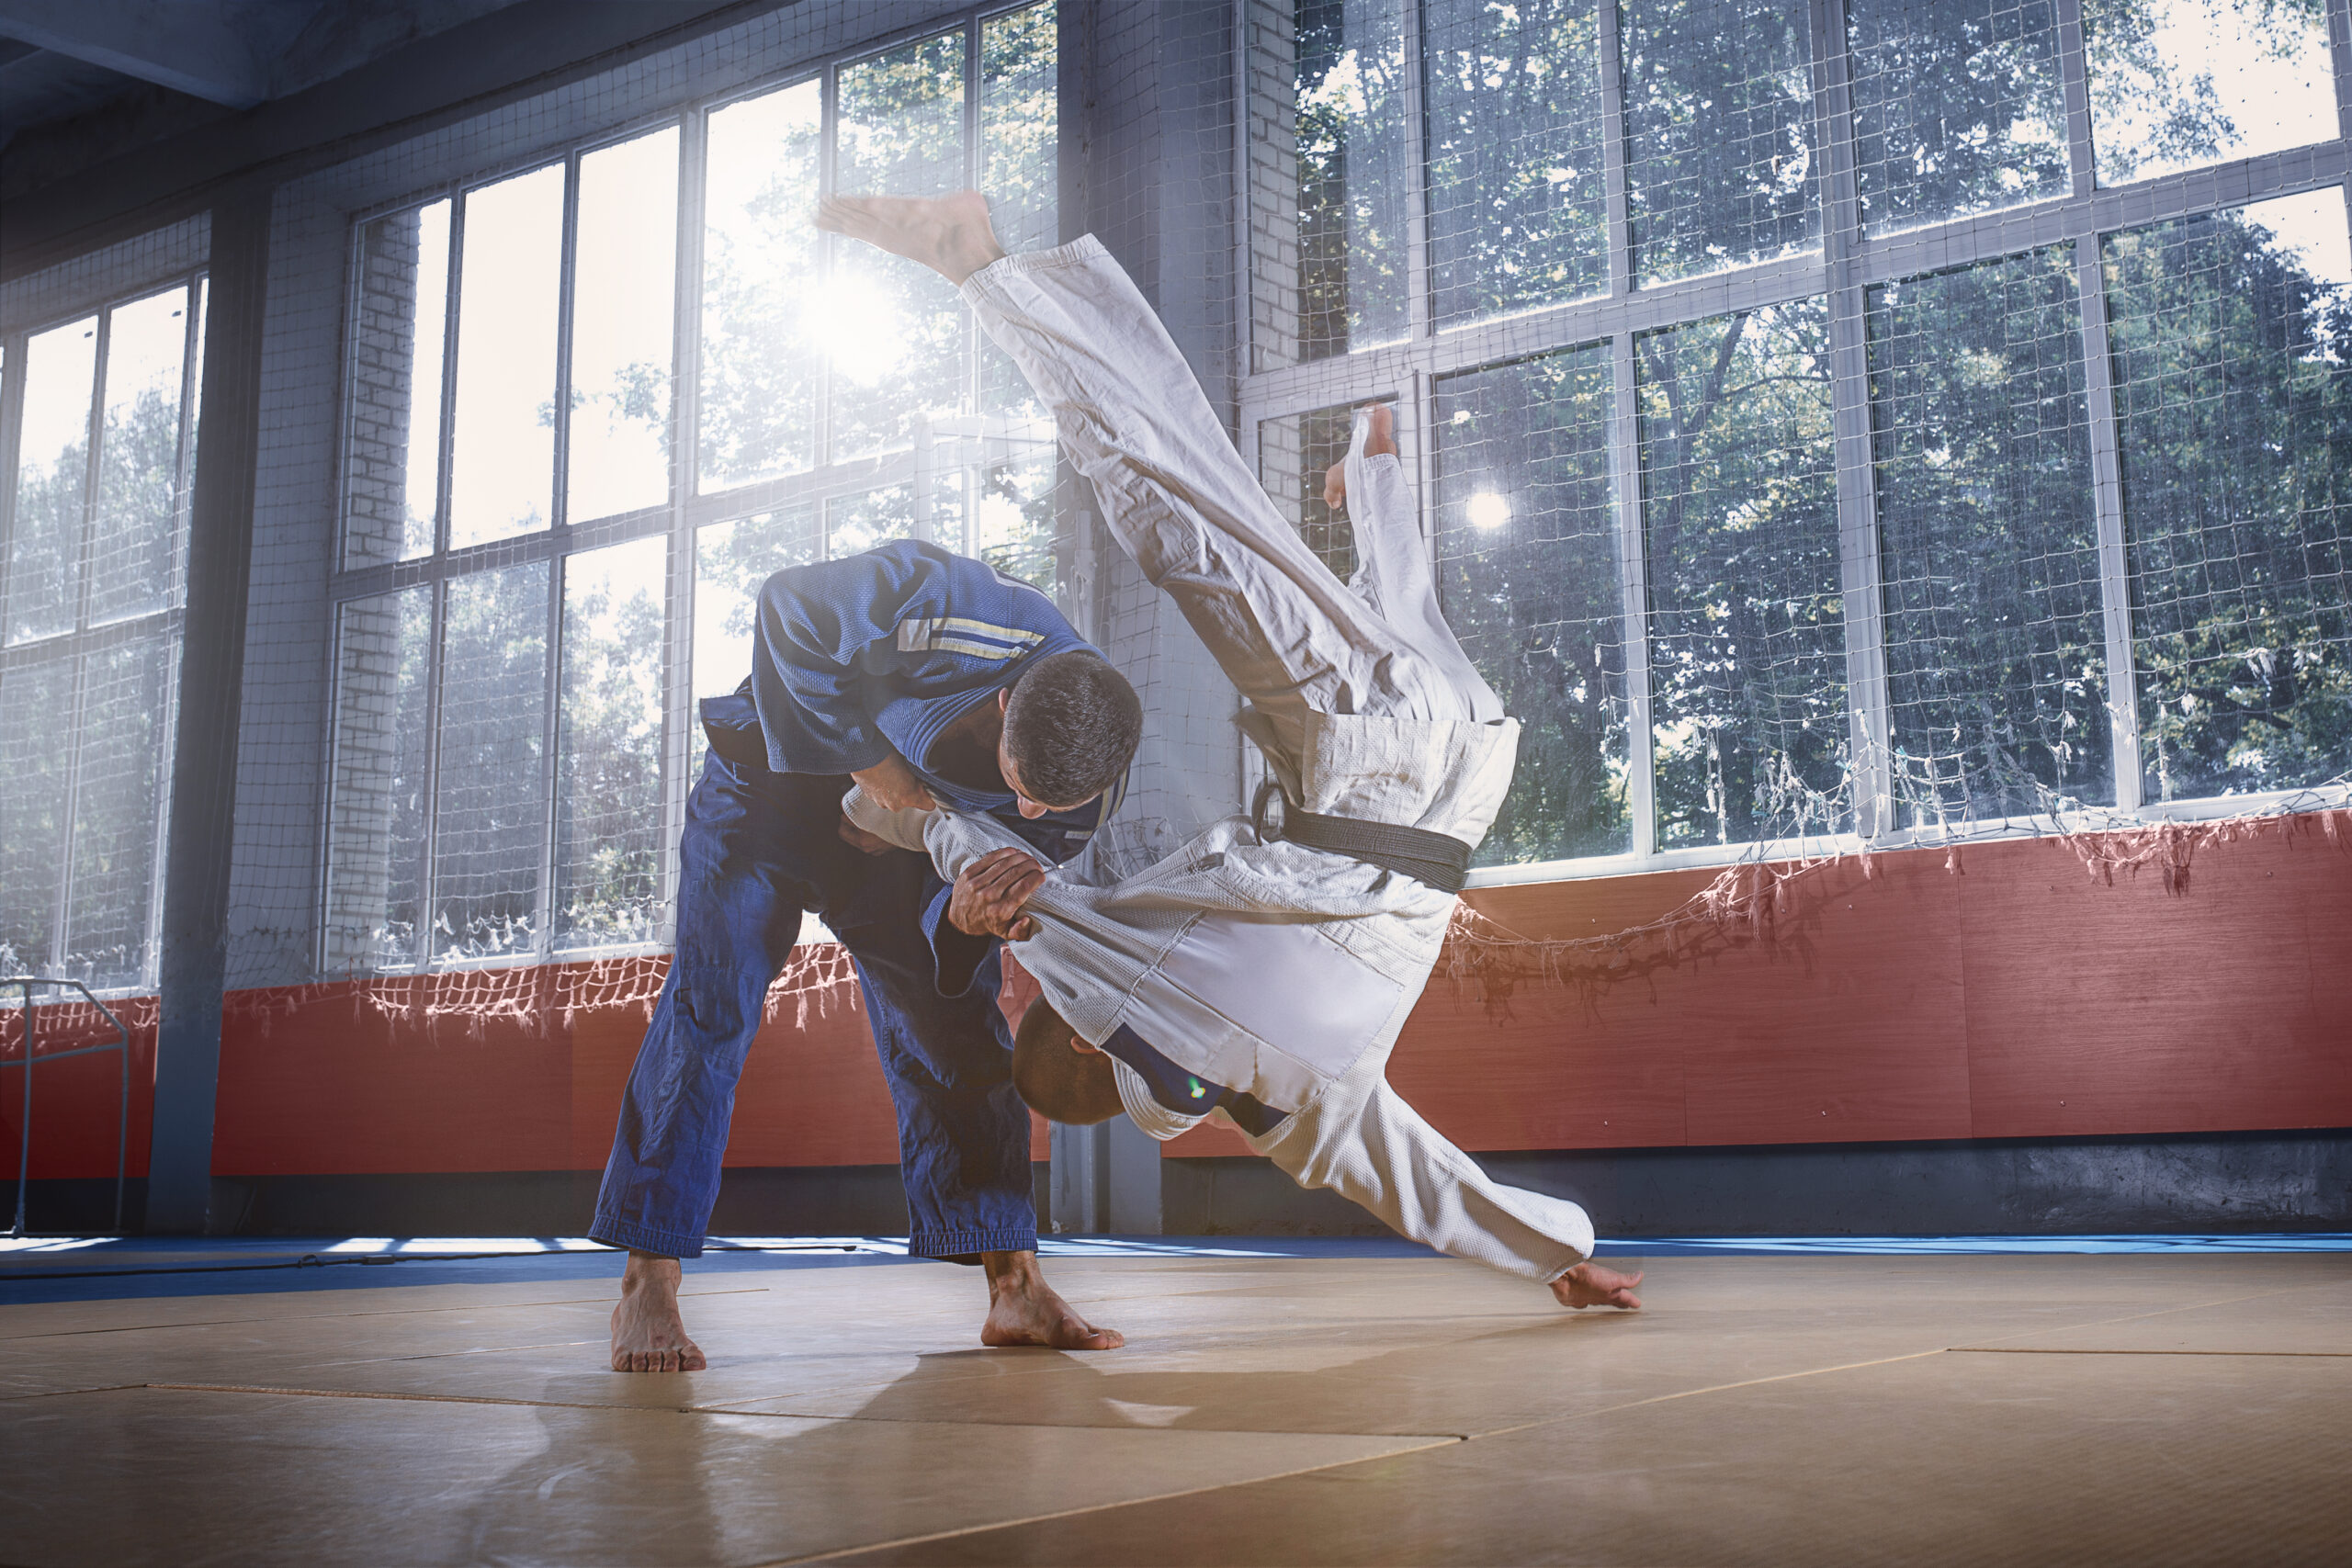 Aprende cómo atar correctamente el cinturón de judo y demuestra tu habilidad en el dojo